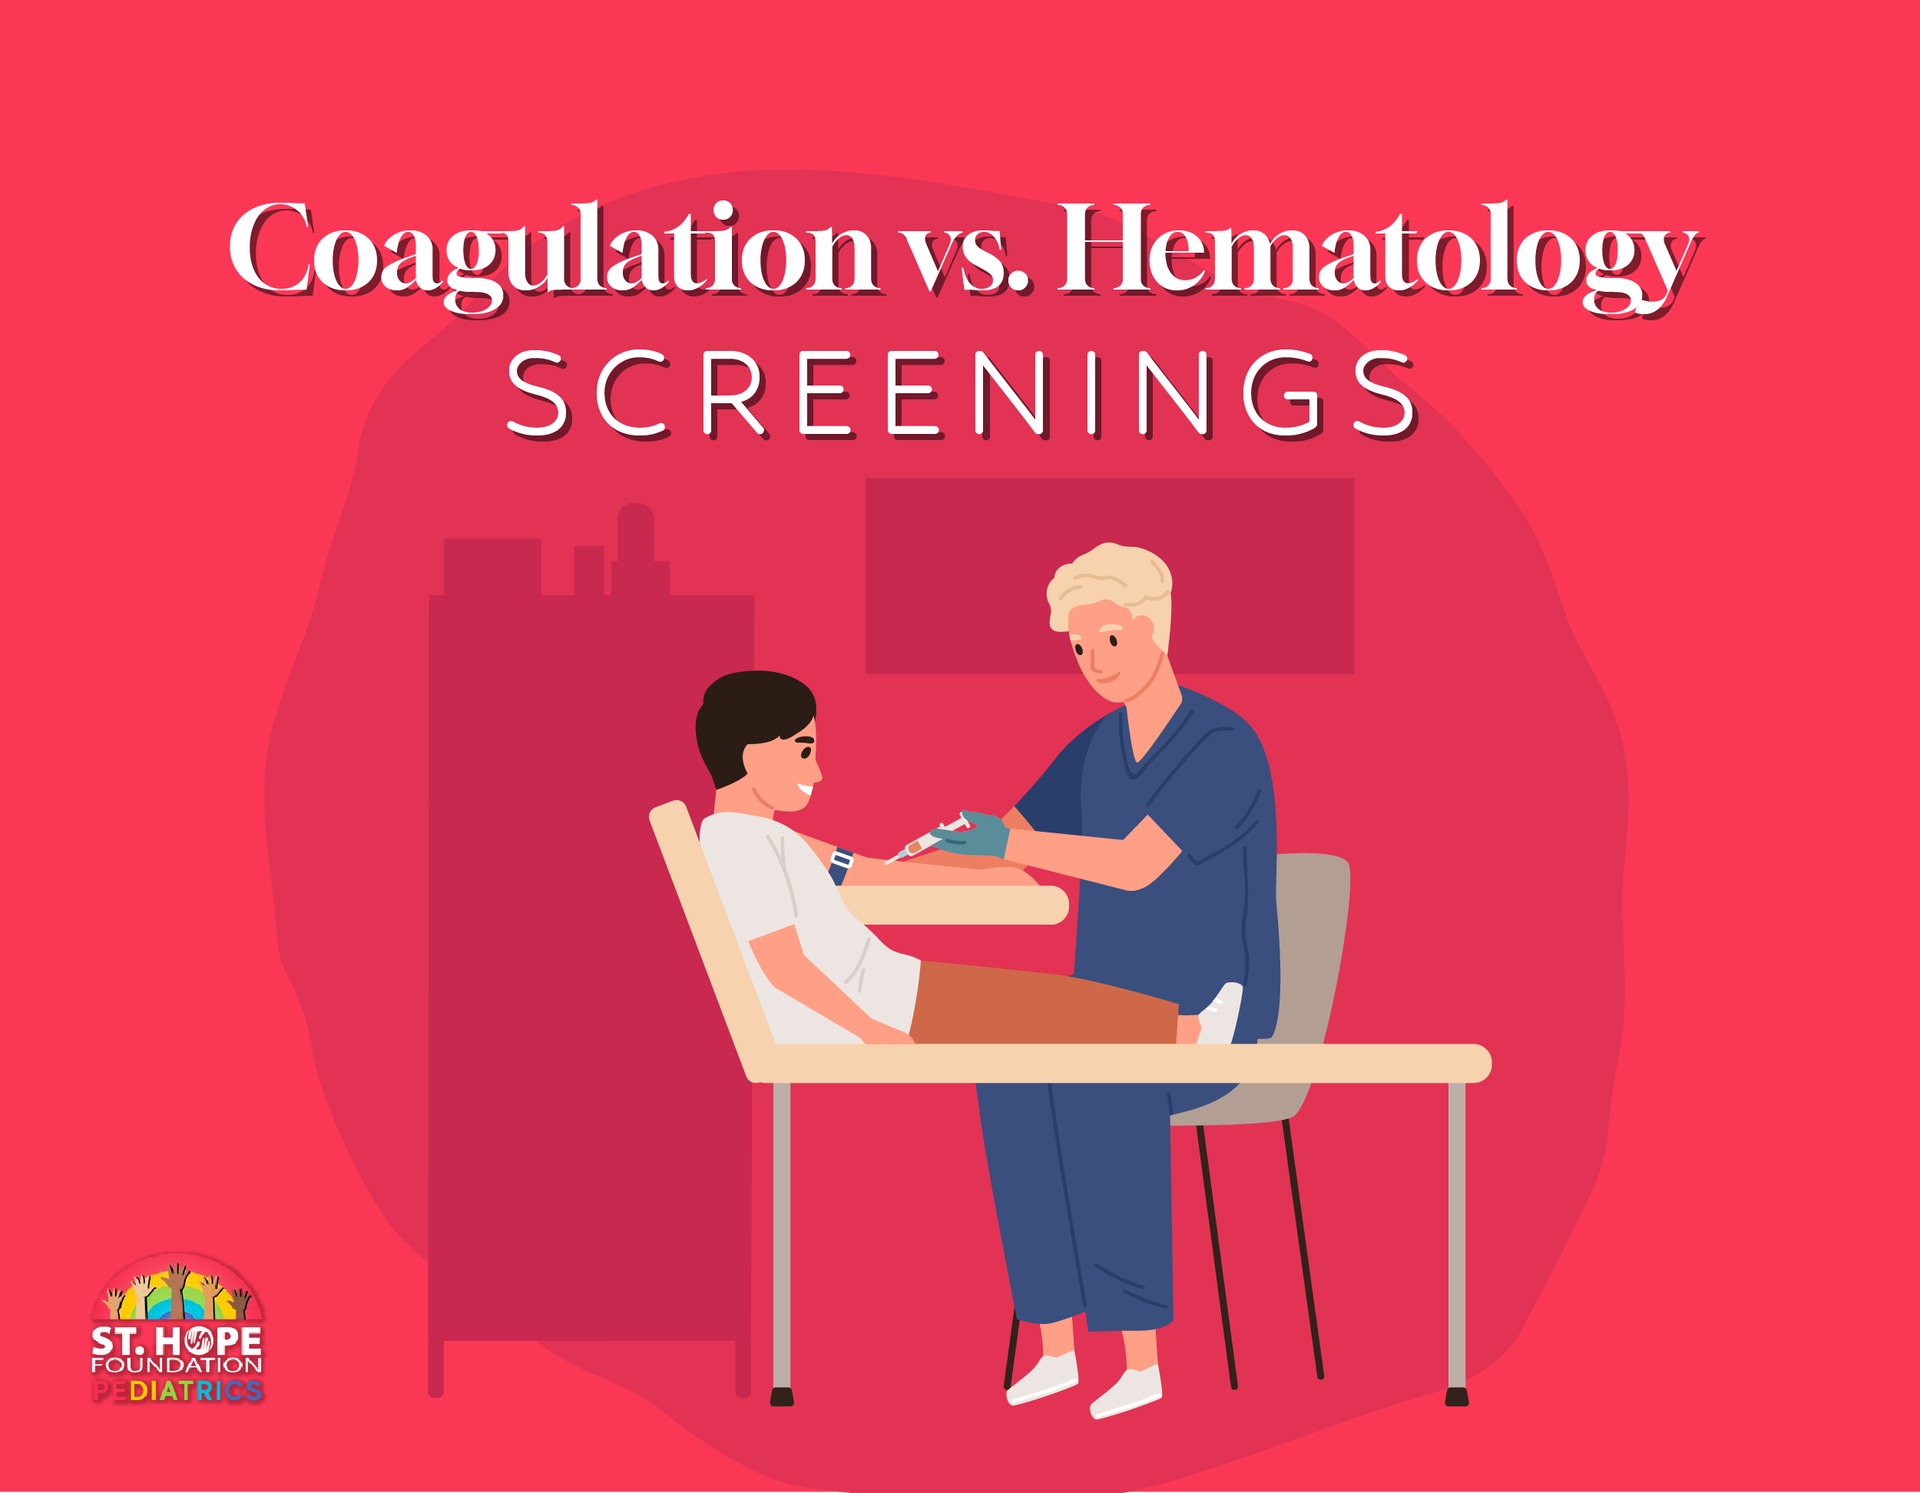 Coagulation vs. Hematology Screenings